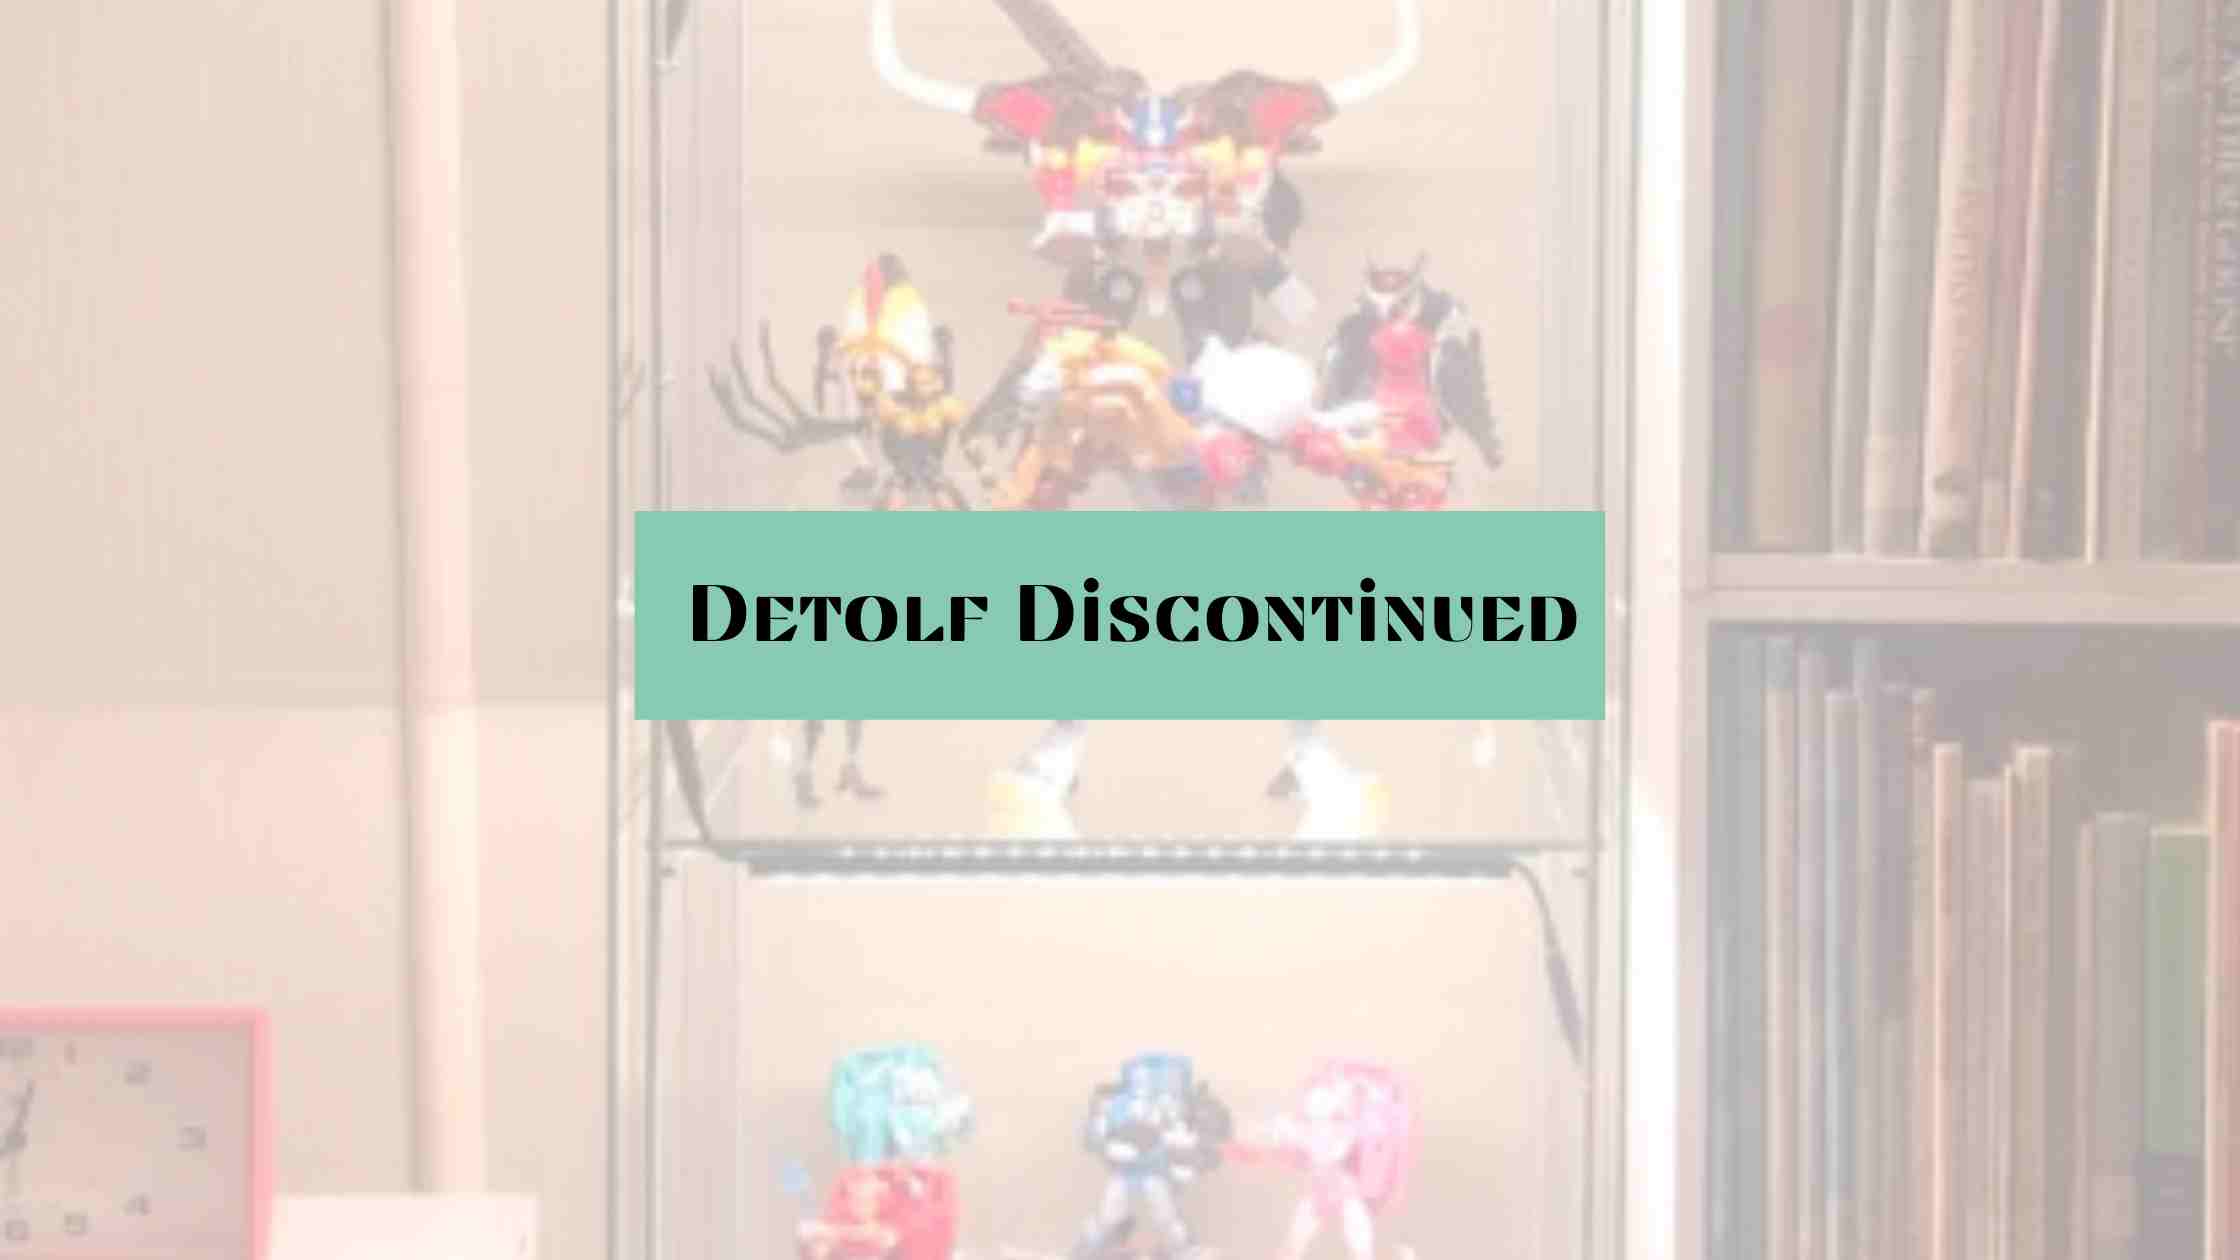 detolf discontinued